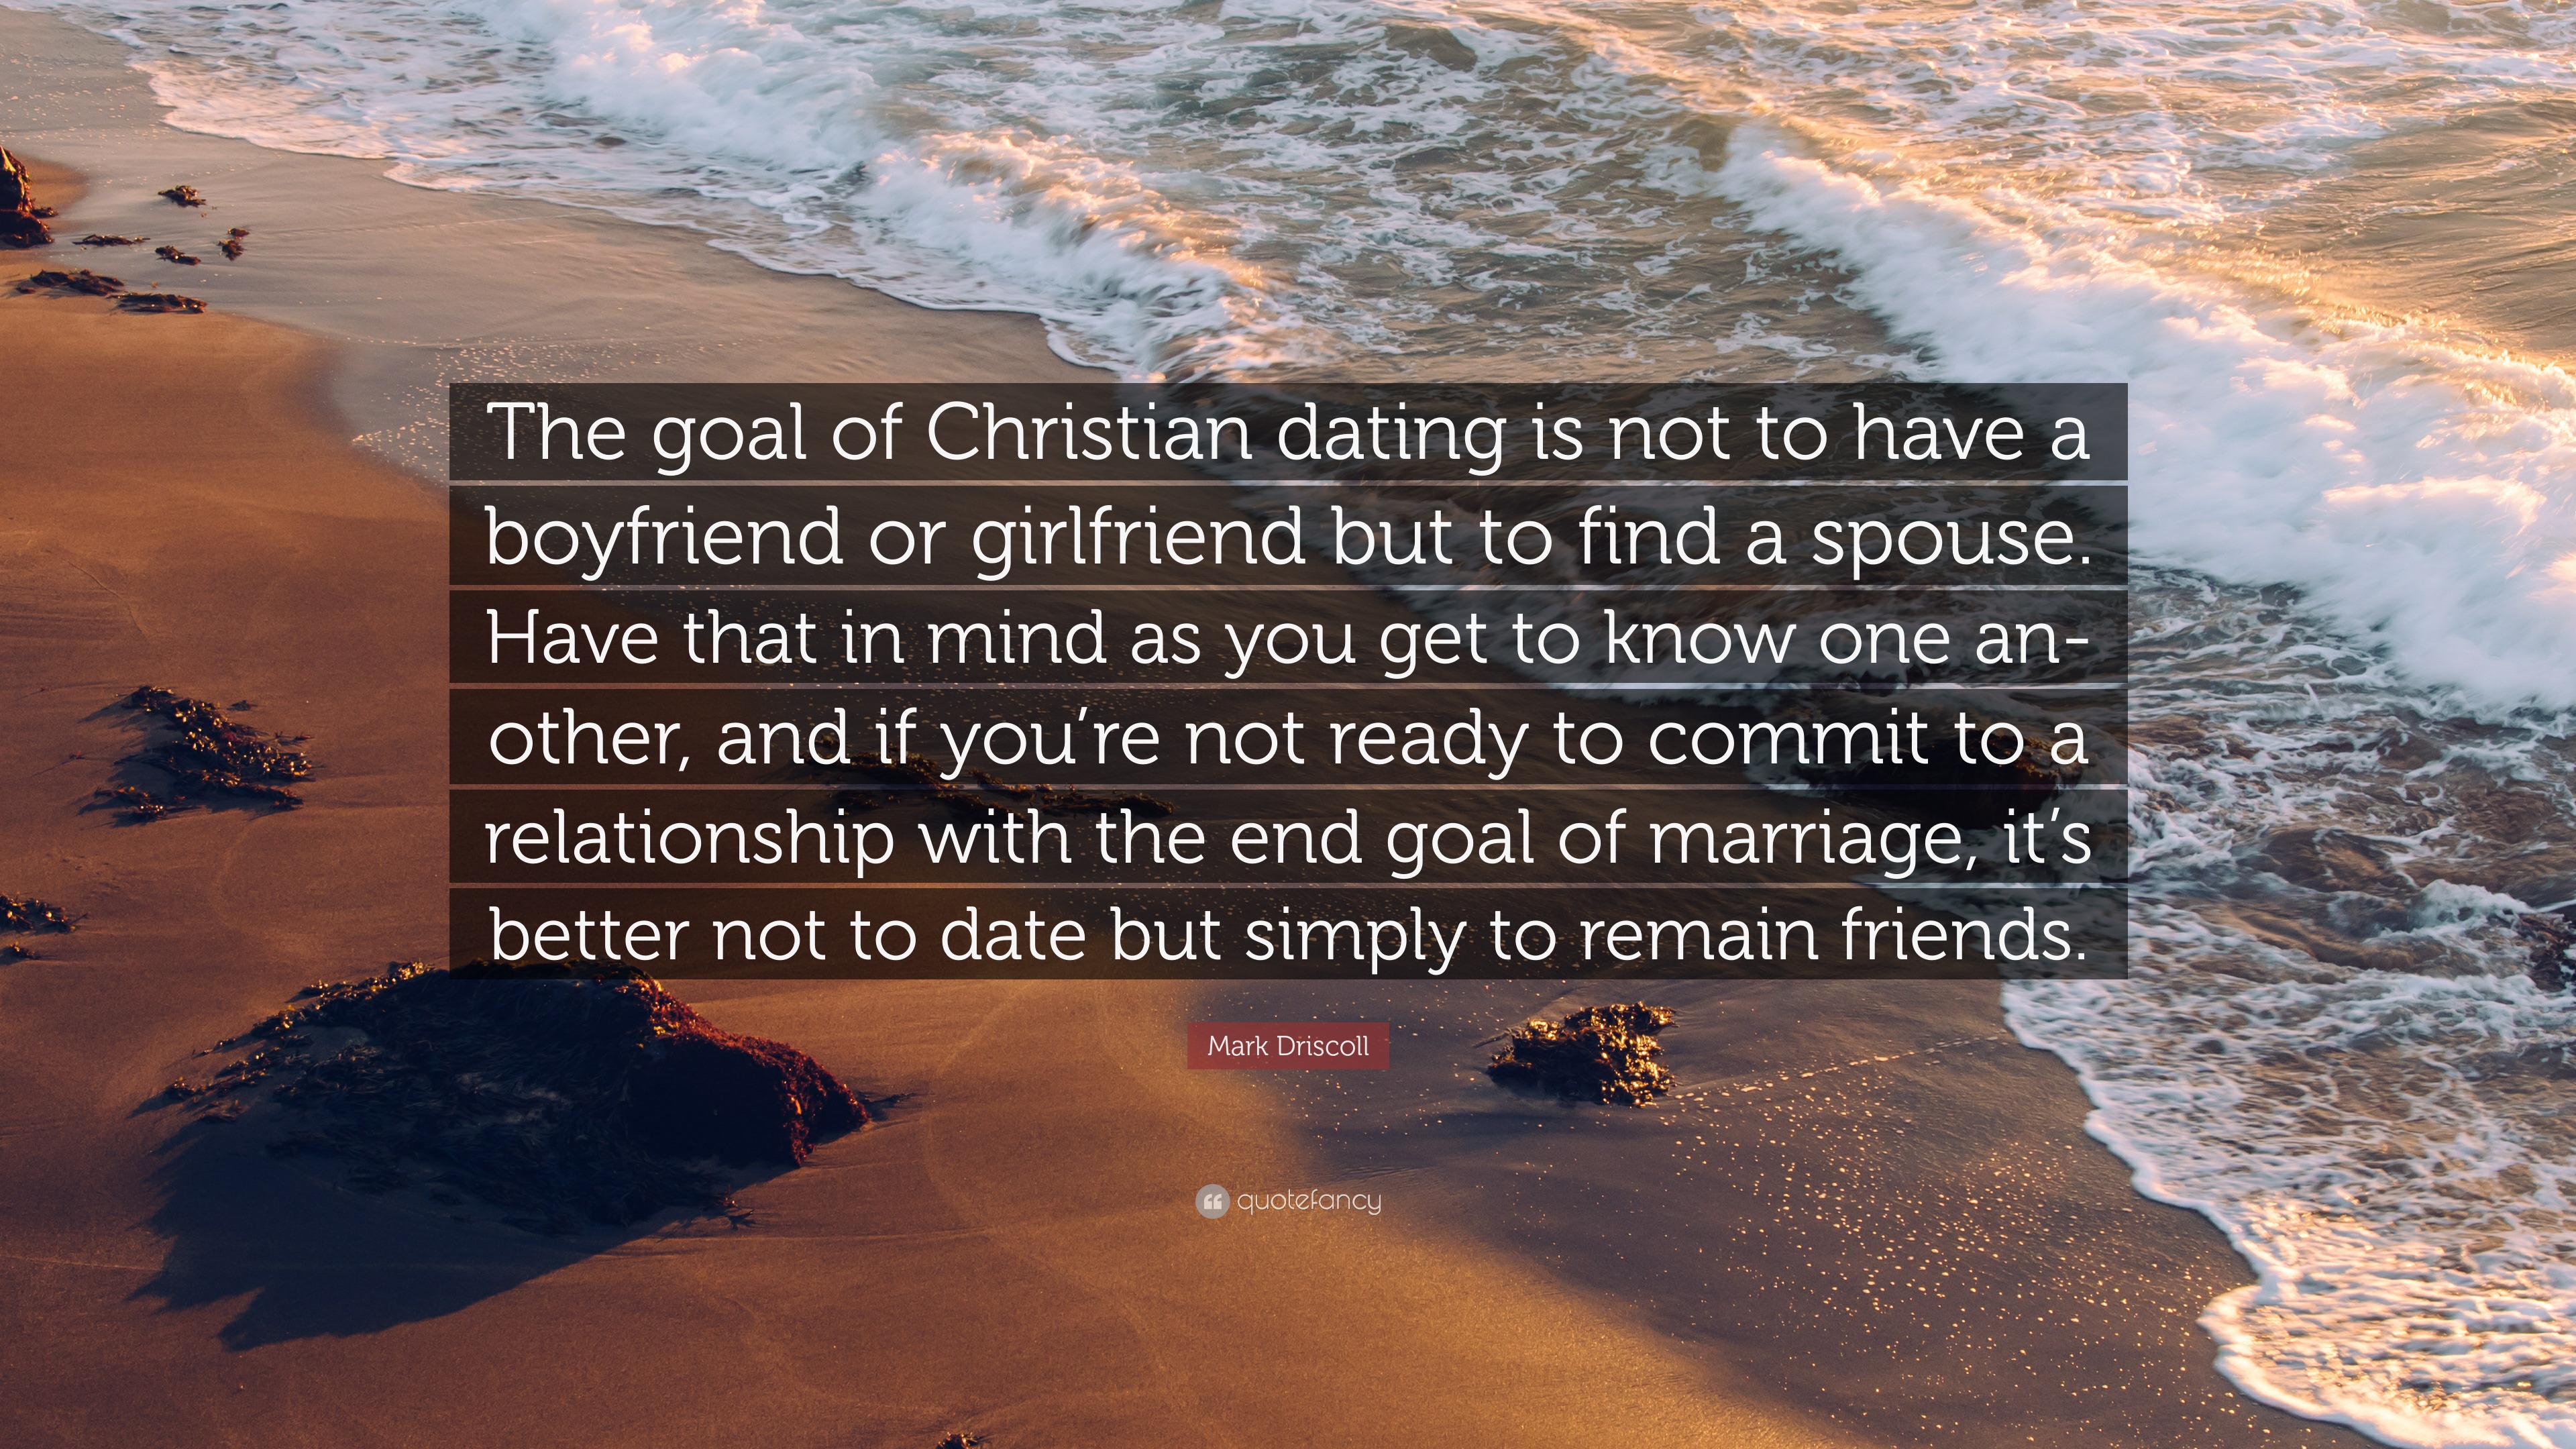 Christian dating a nicht christian